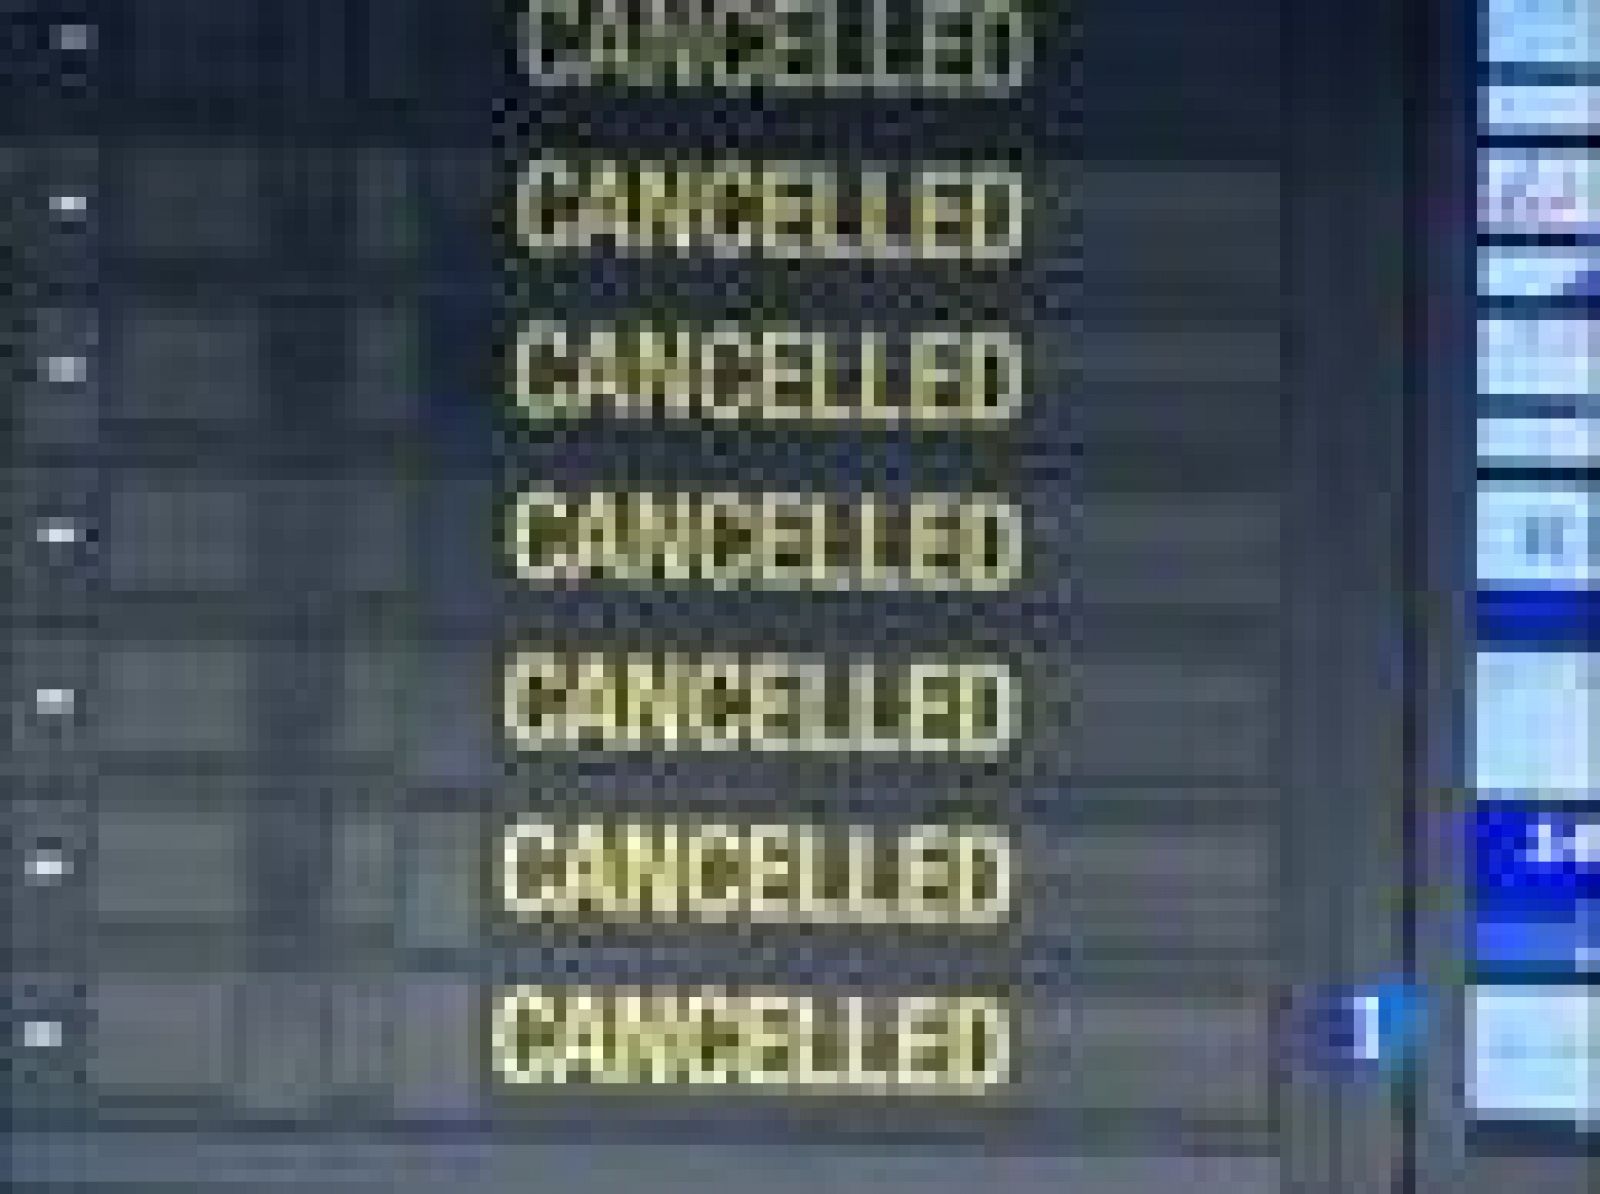 Sólo hoy ha habido que cancelar 17 mil vuelos, lo que está dejando a centenares de miles de viajeros en tierra.  